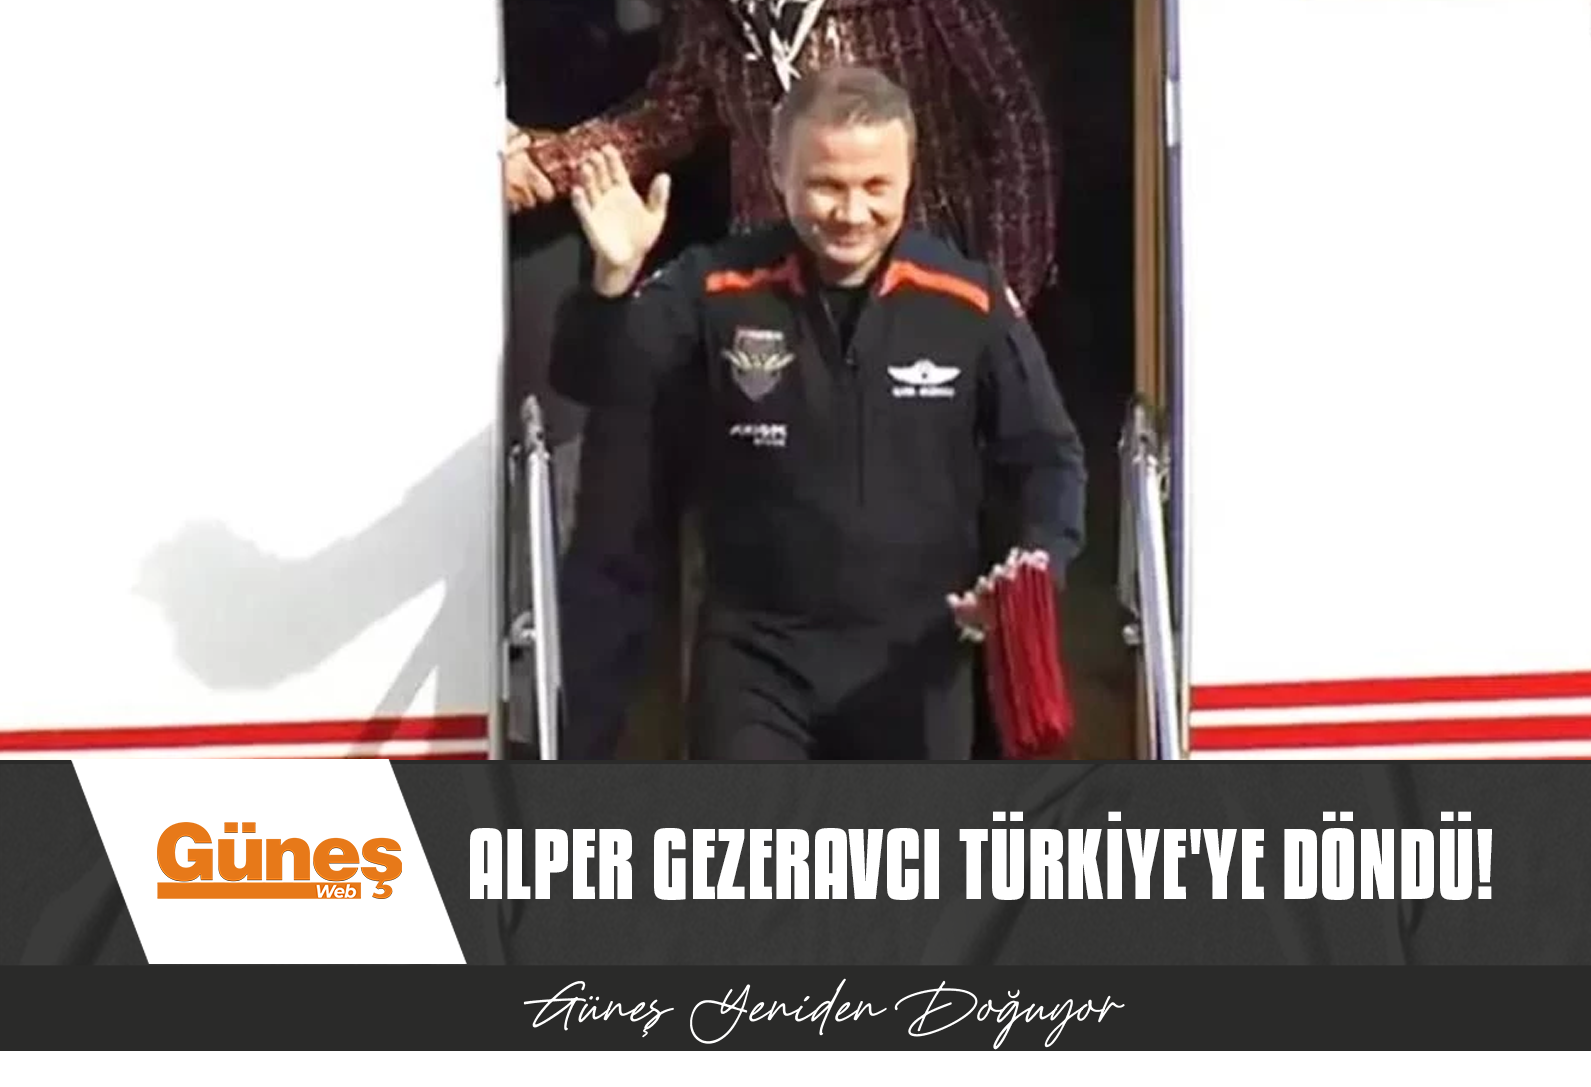 Alper Gezeravcı Türkiye’ye döndü!